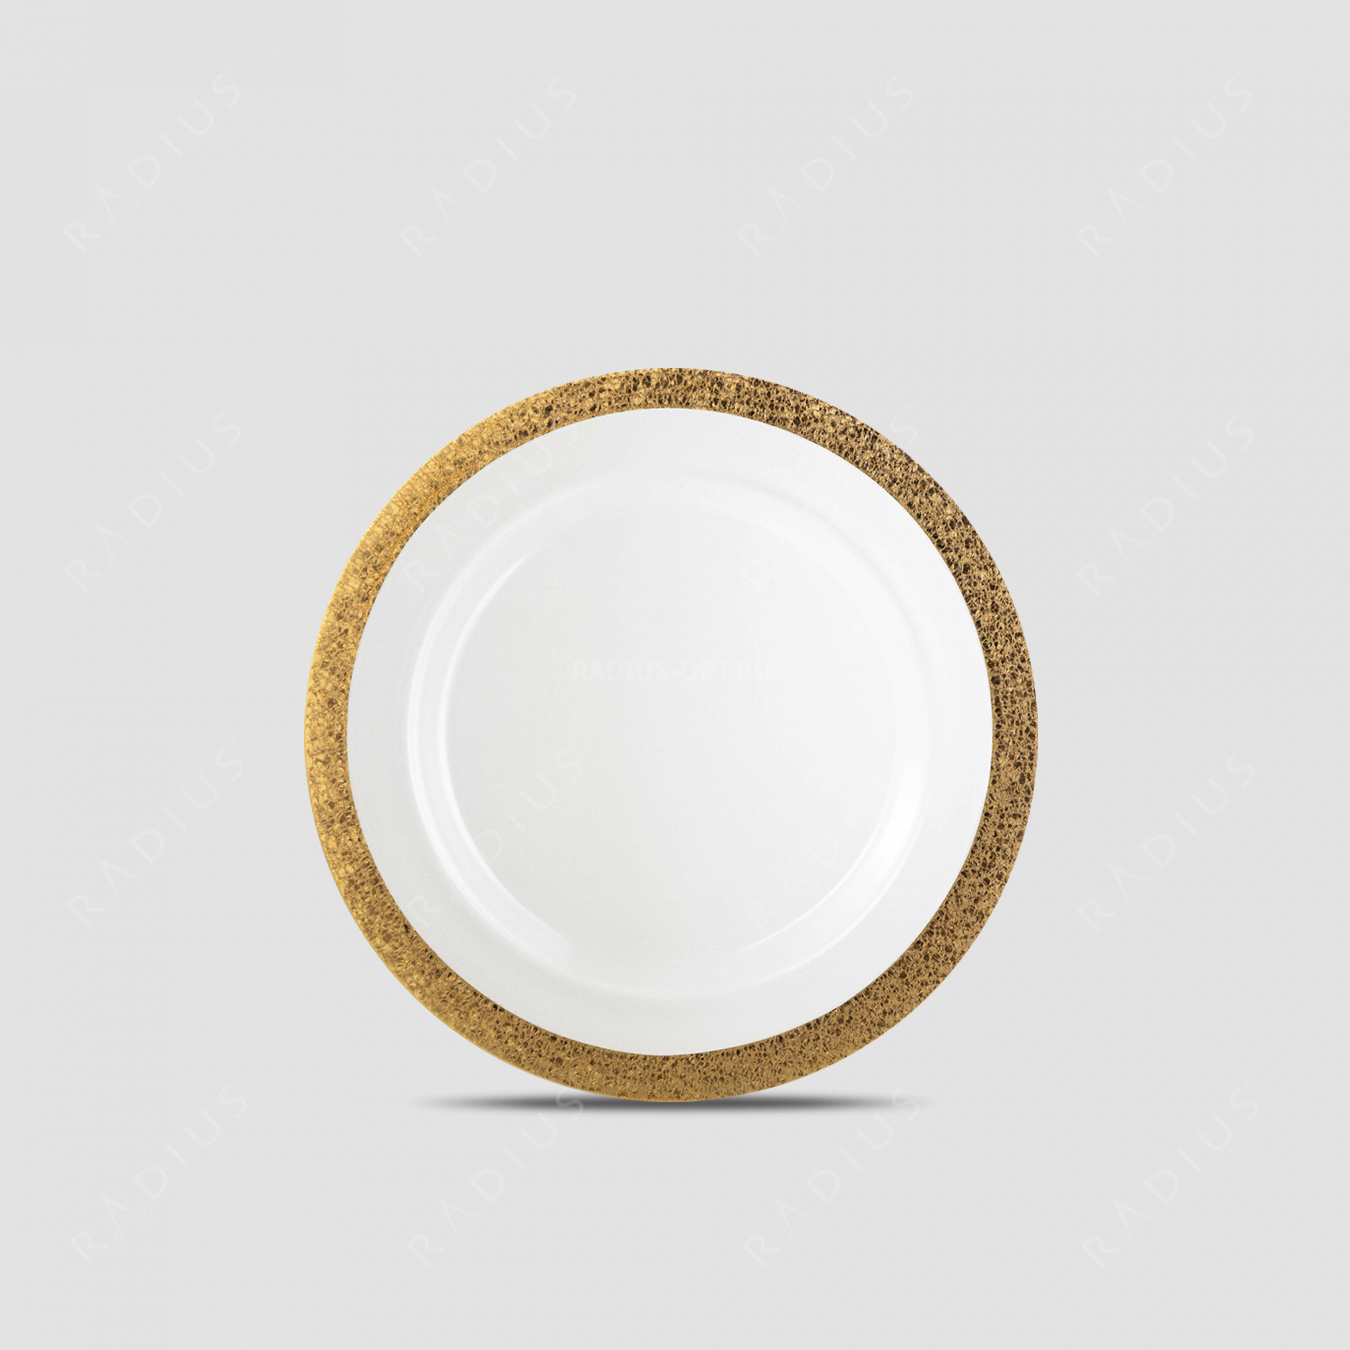 Тарелка Gold, диаметр: 35 см, материал: бессвинцовый хрусталь, цвет: прозрачный/золото, серия Gold Rush, EISCH, Германия